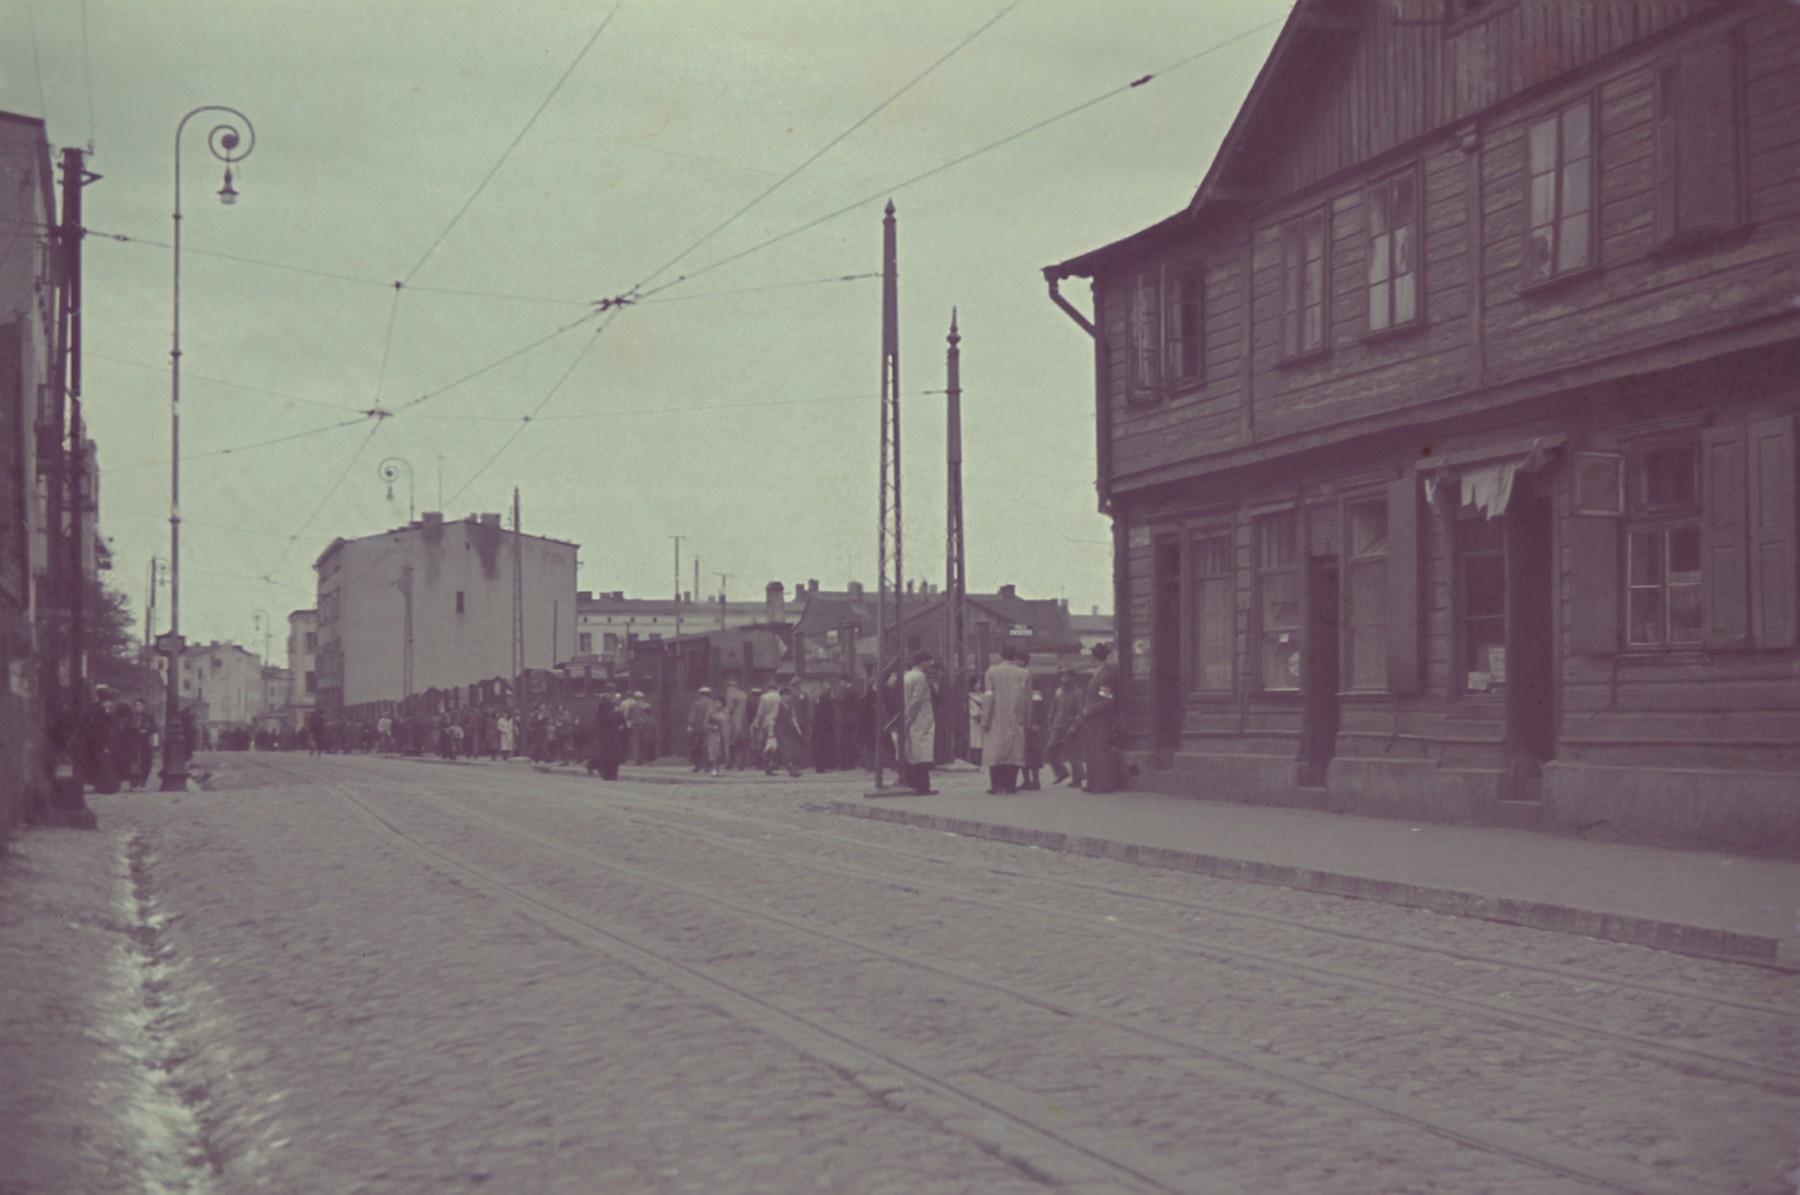 A street scene in the Lodz ghetto.